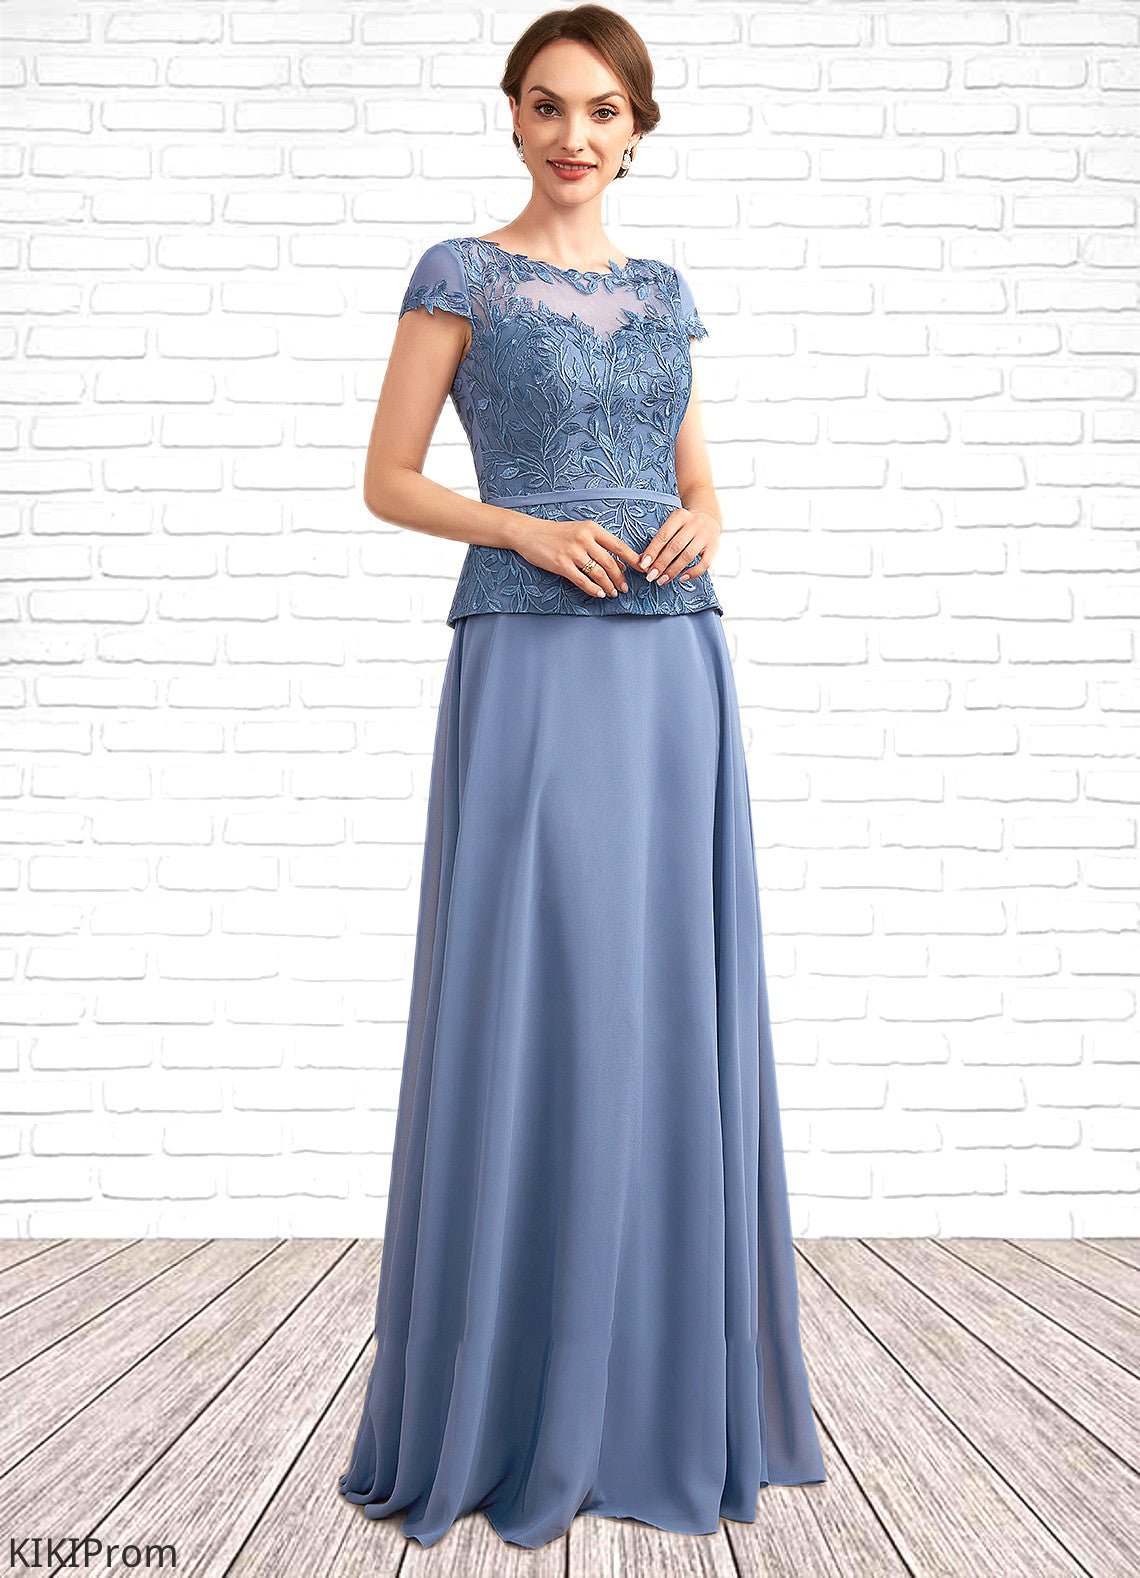 Deborah A-Line Scoop Neck Floor-Length Chiffon Lace Mother of the Bride Dress DZ126P0014989